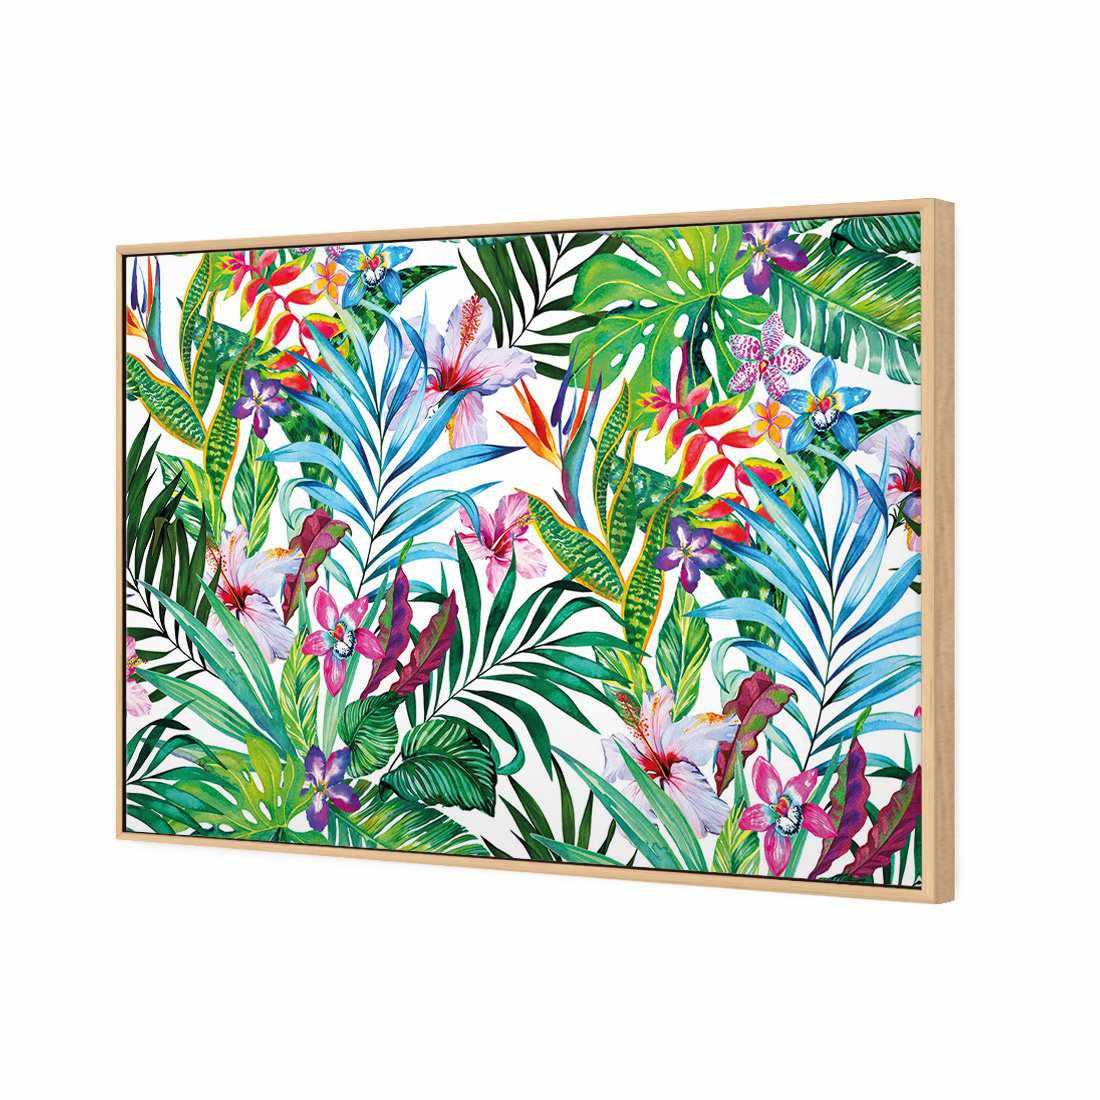 Jungle At Noon Canvas Art-Canvas-Wall Art Designs-45x30cm-Canvas - Oak Frame-Wall Art Designs